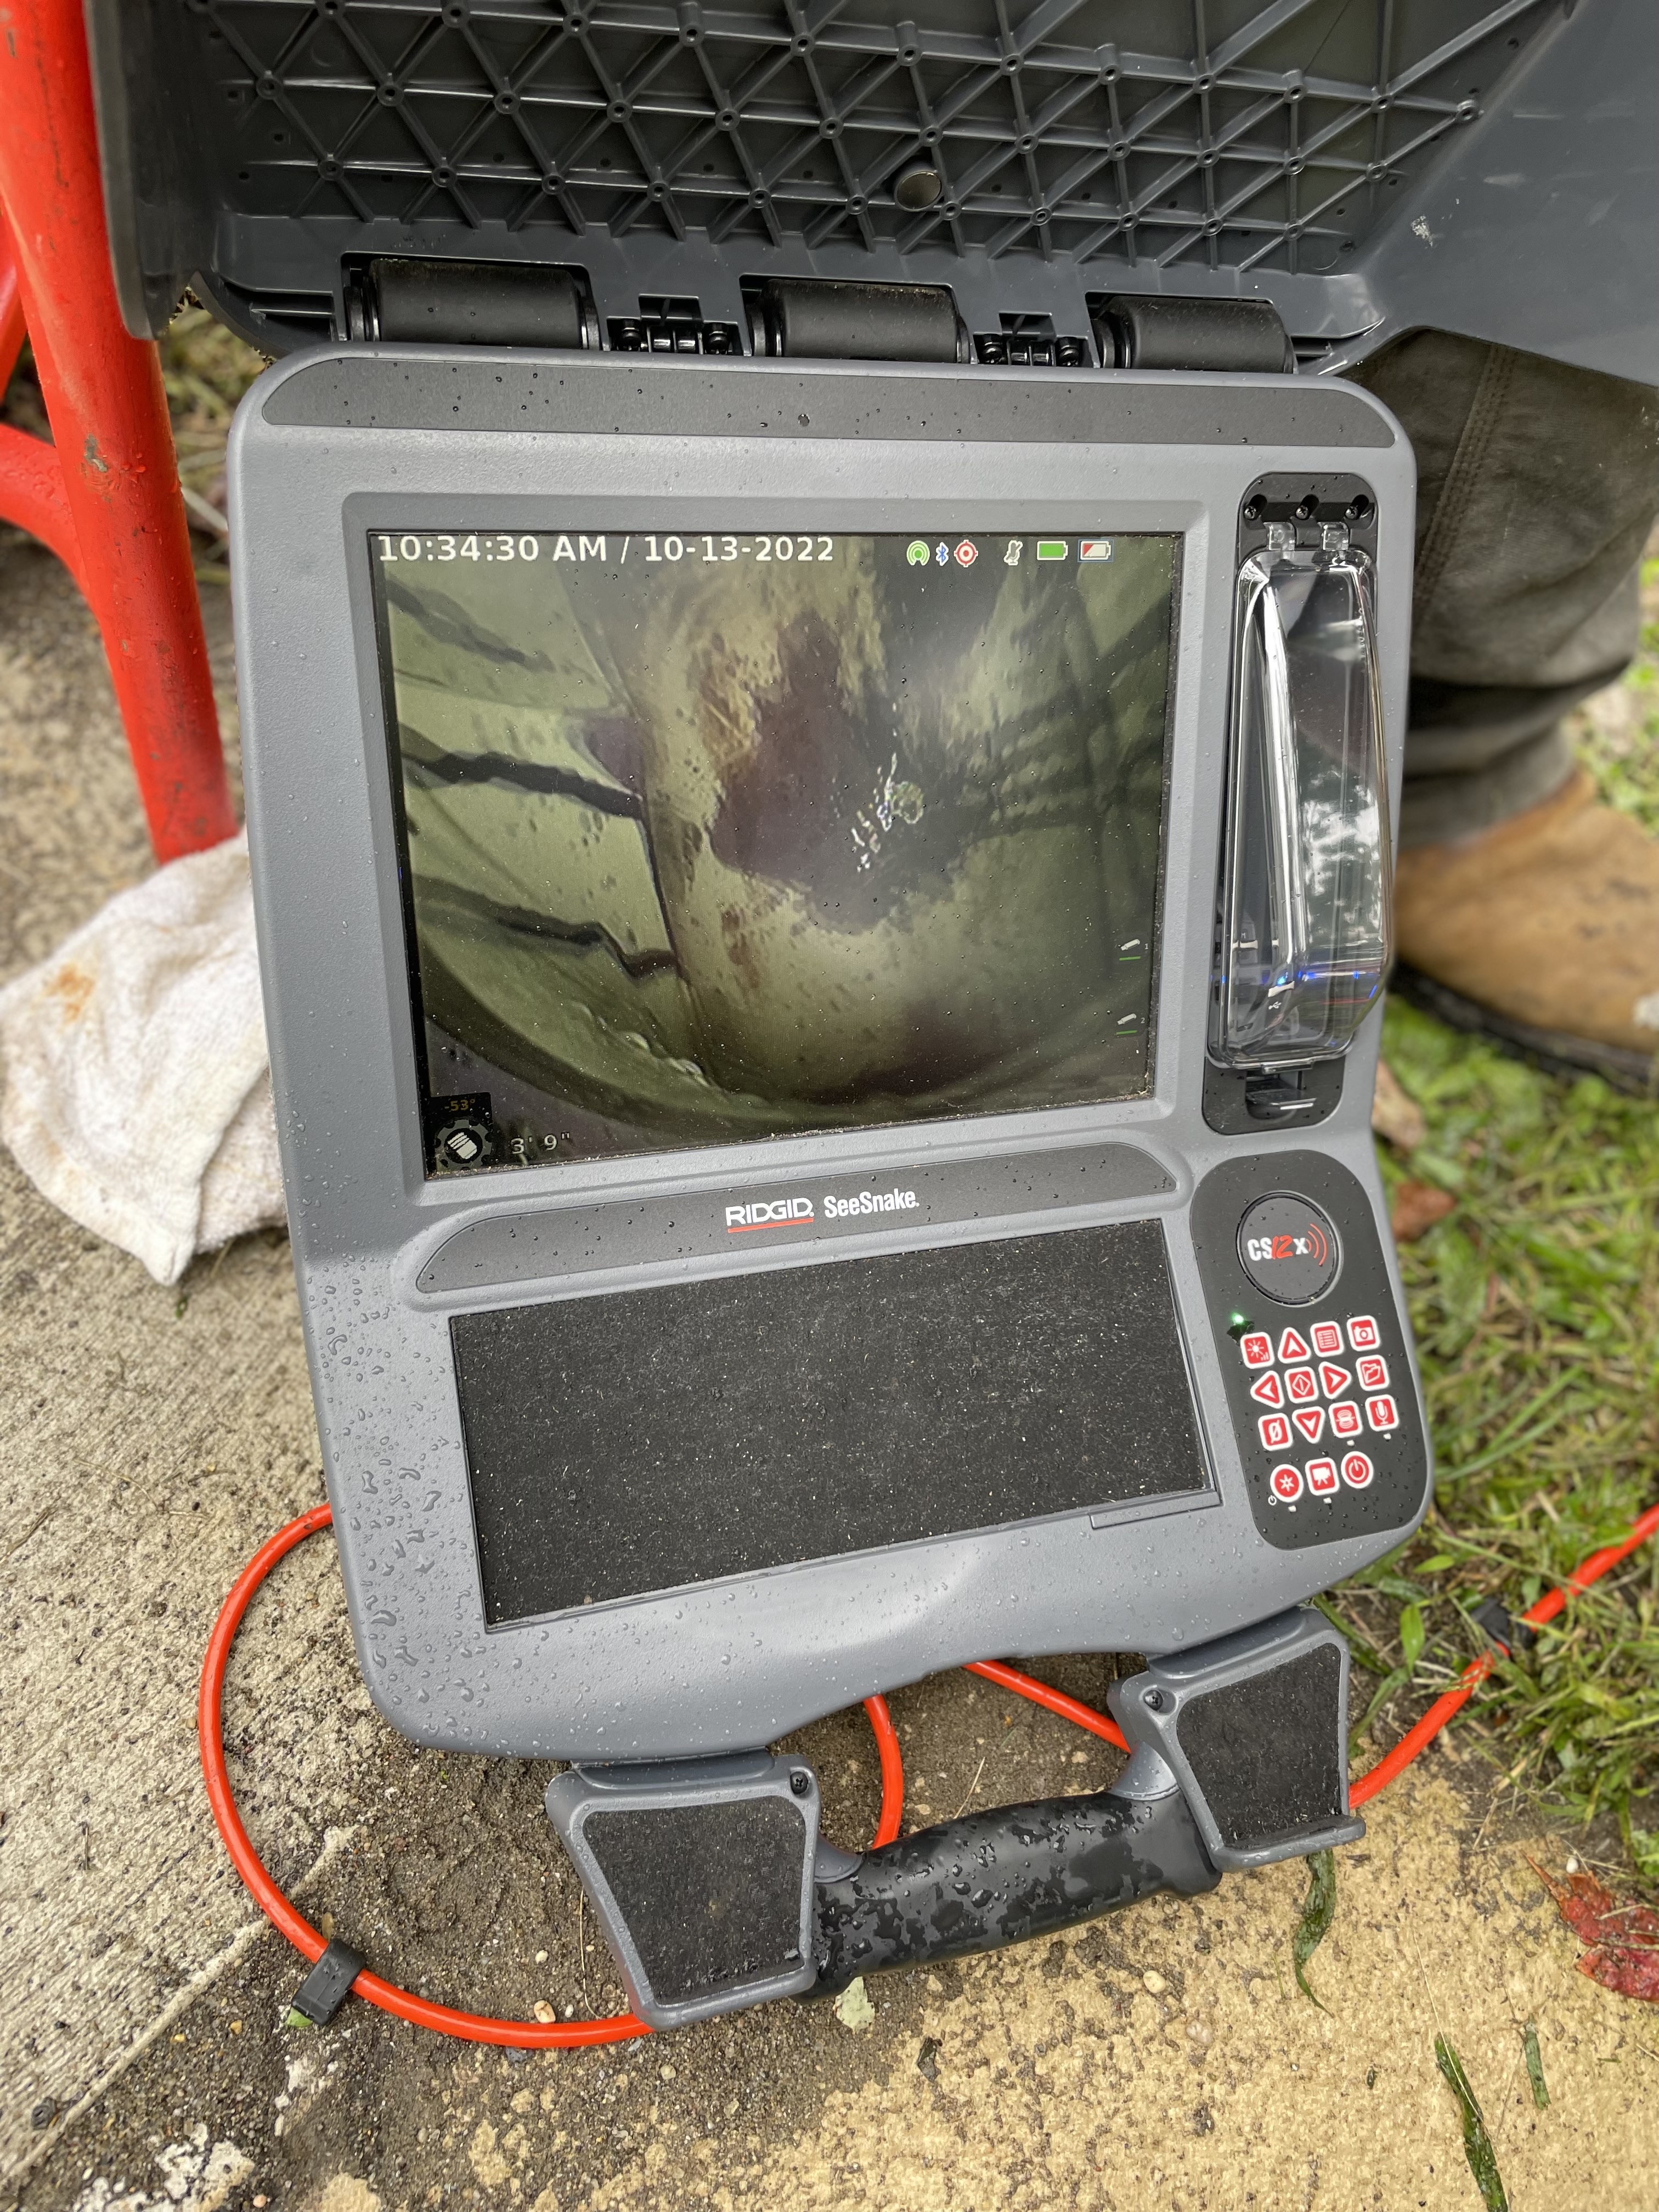 sewer camera monitor